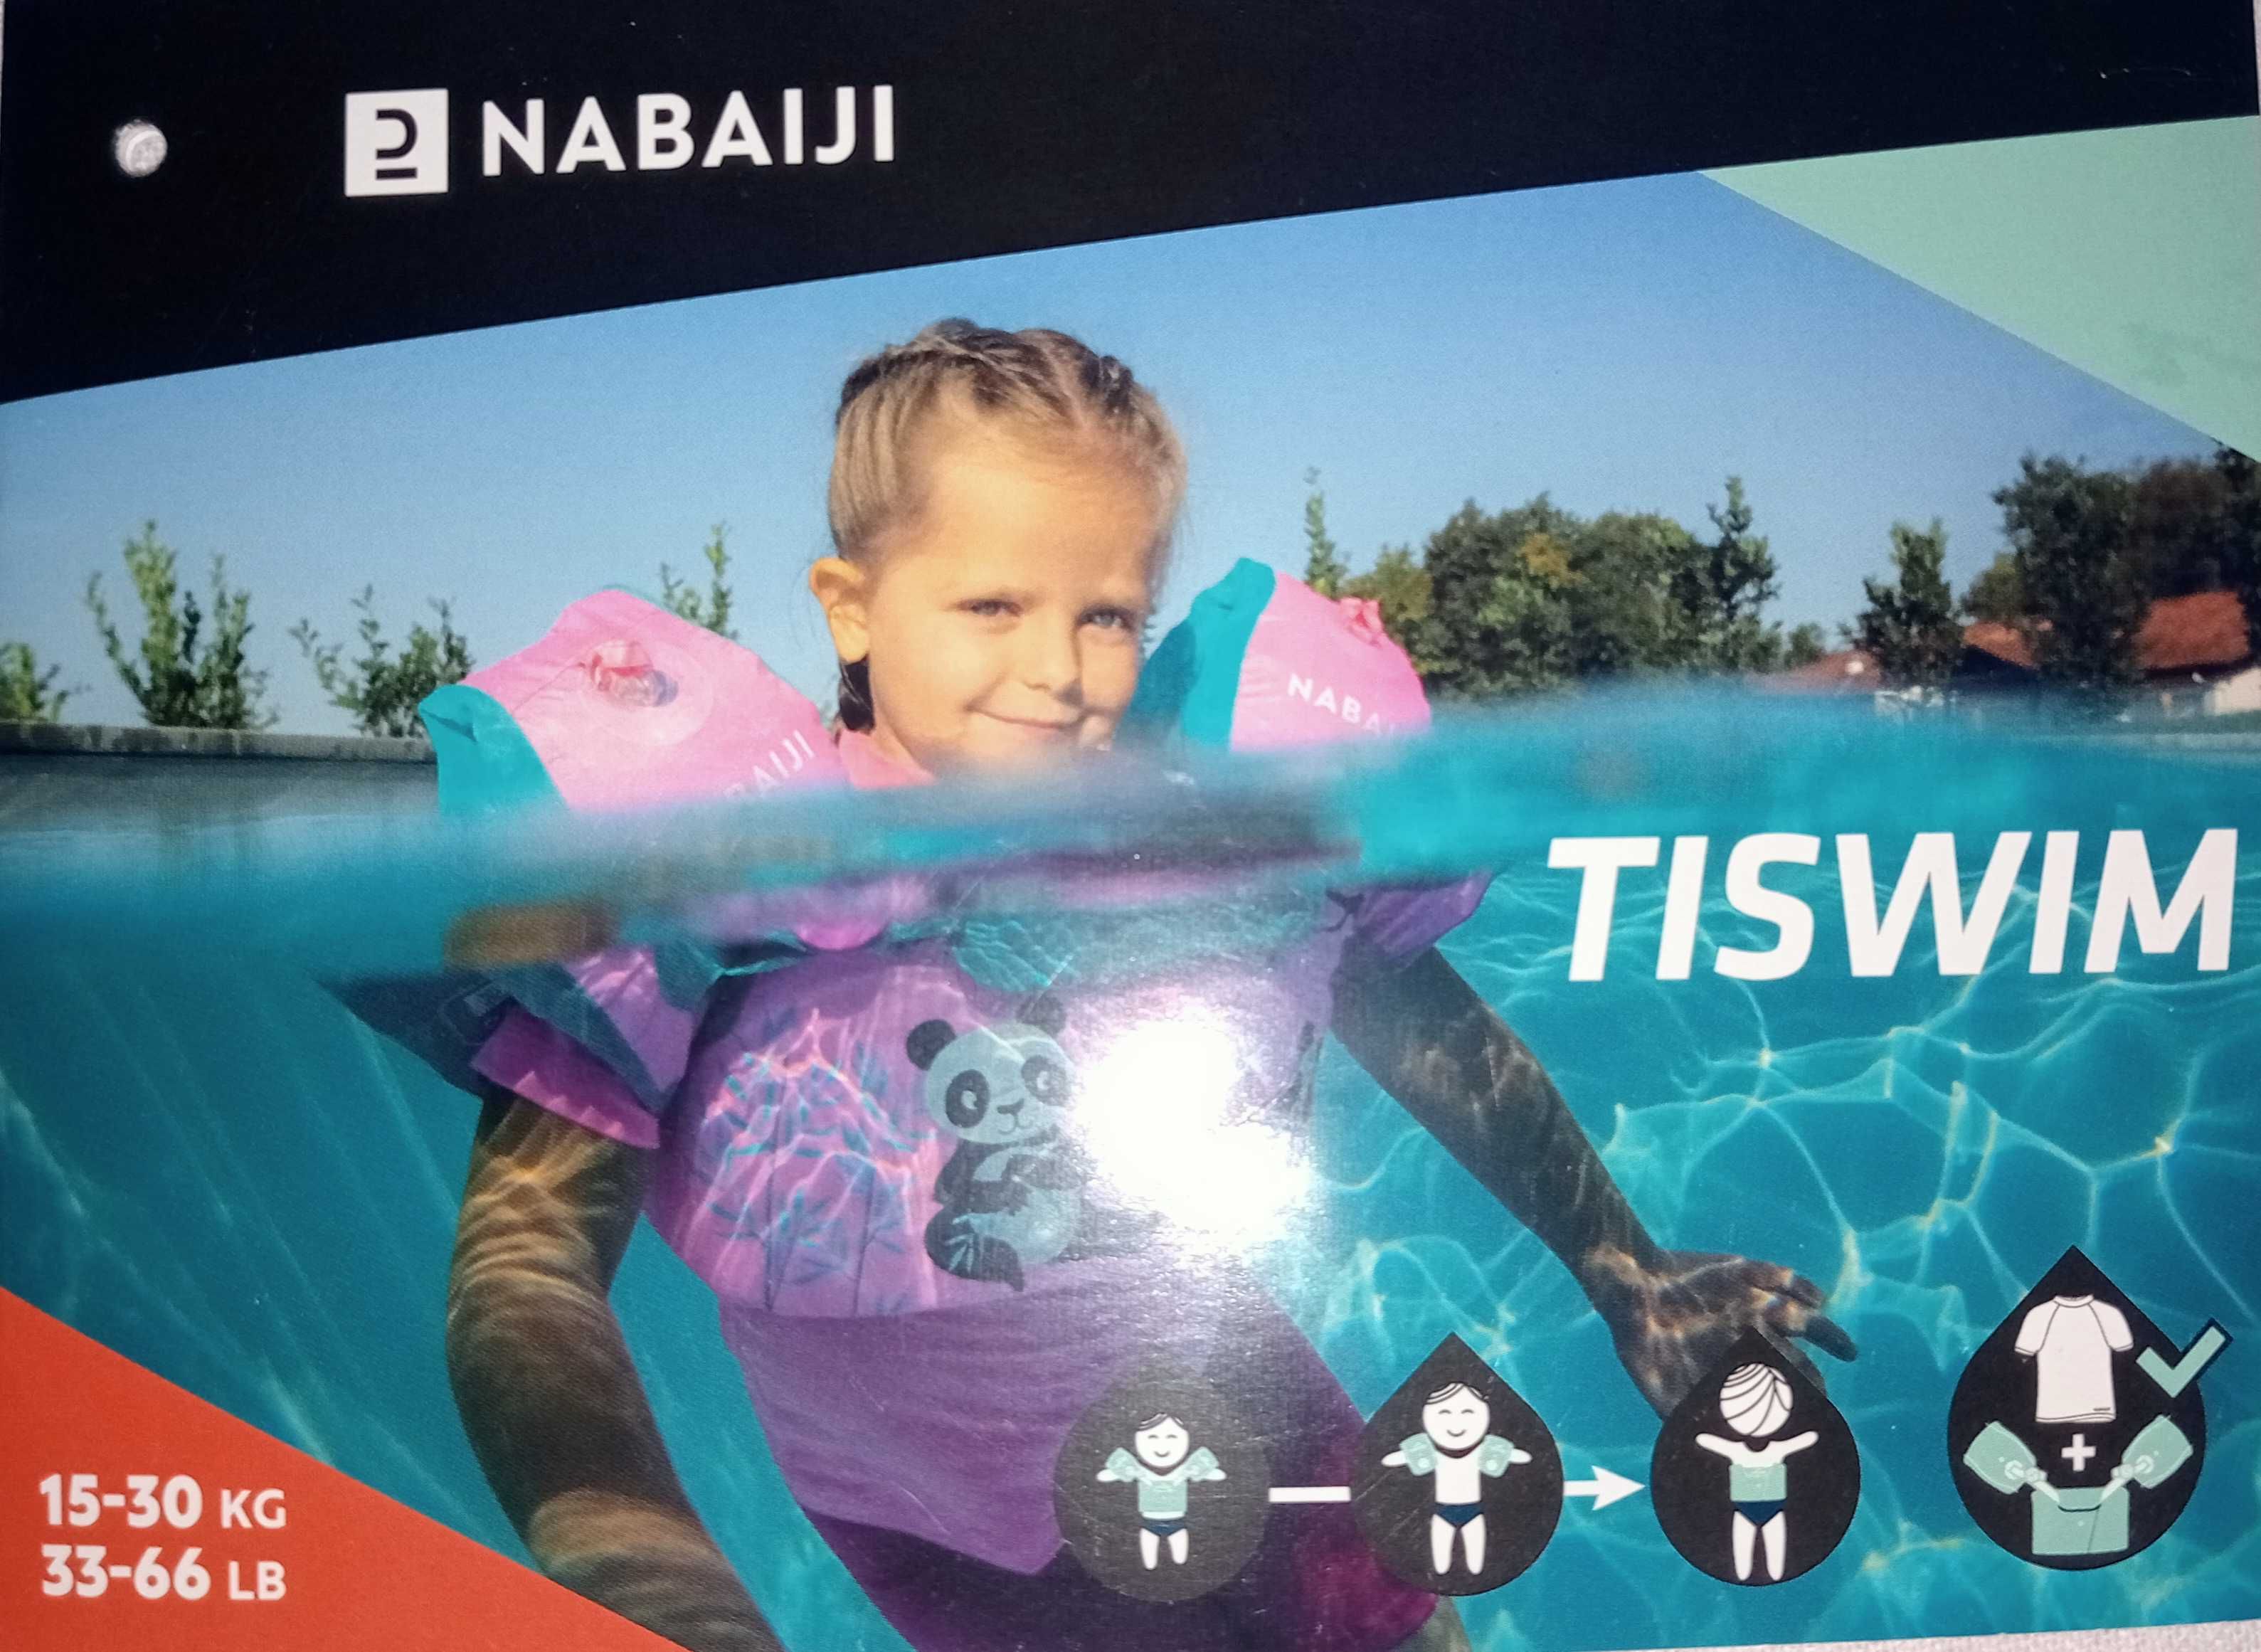 Braçadeiras-cinto de piscina Nabaiji TISWIM 2 a 6 anos.